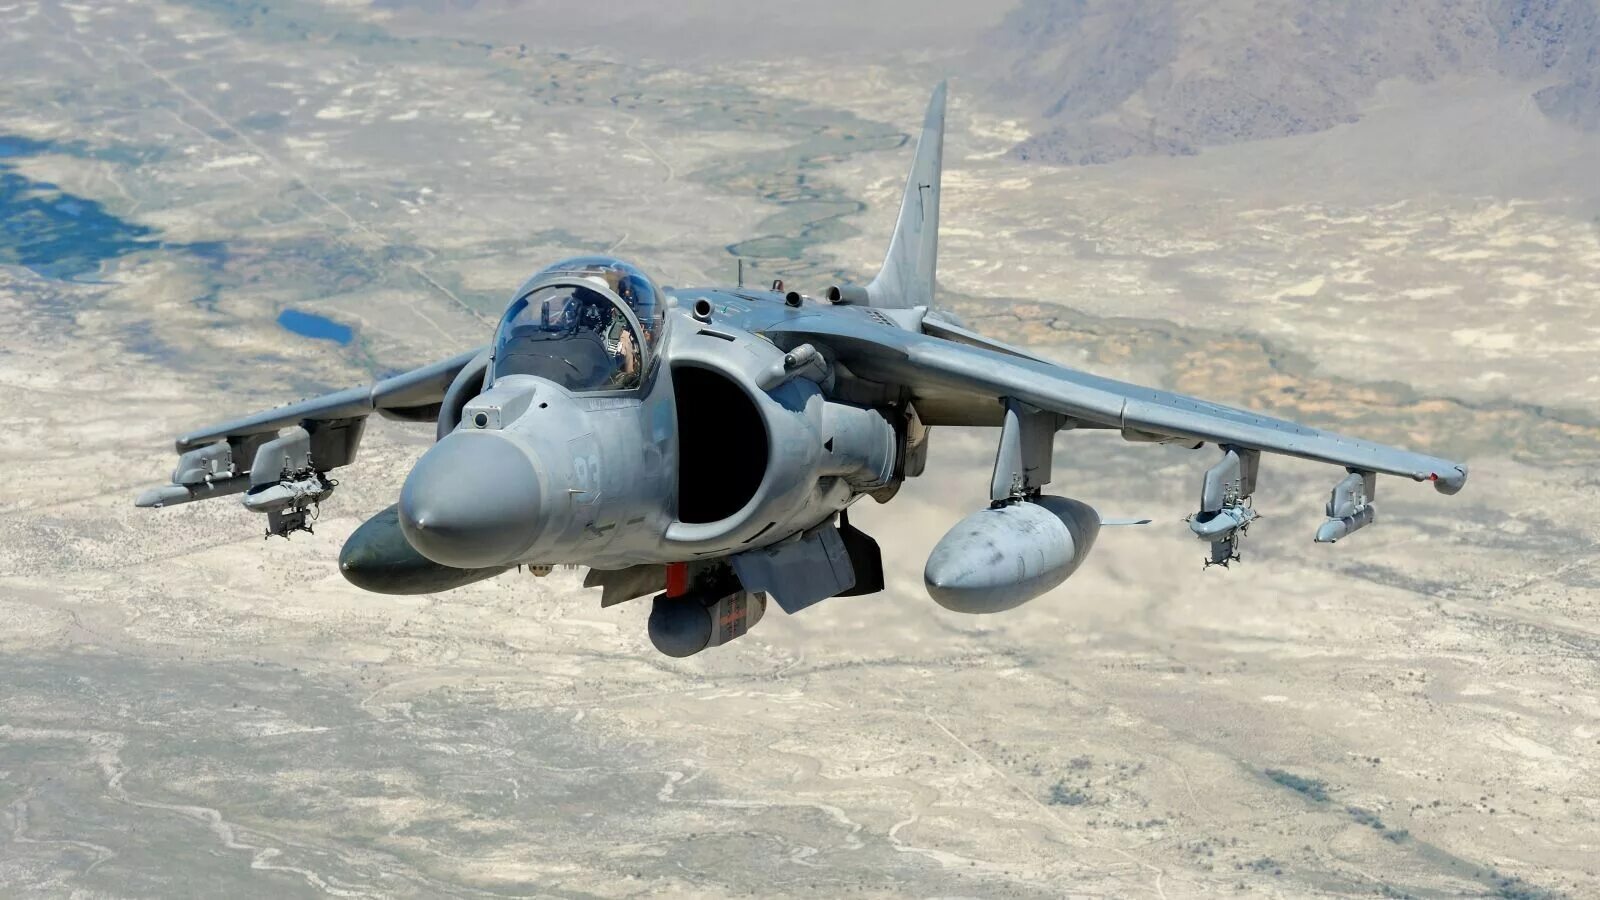 Av-8b Harrier 2. Харриер av-8b. Av-8 Harrier II. Штурмовик av-8b Harrier. Av 8b